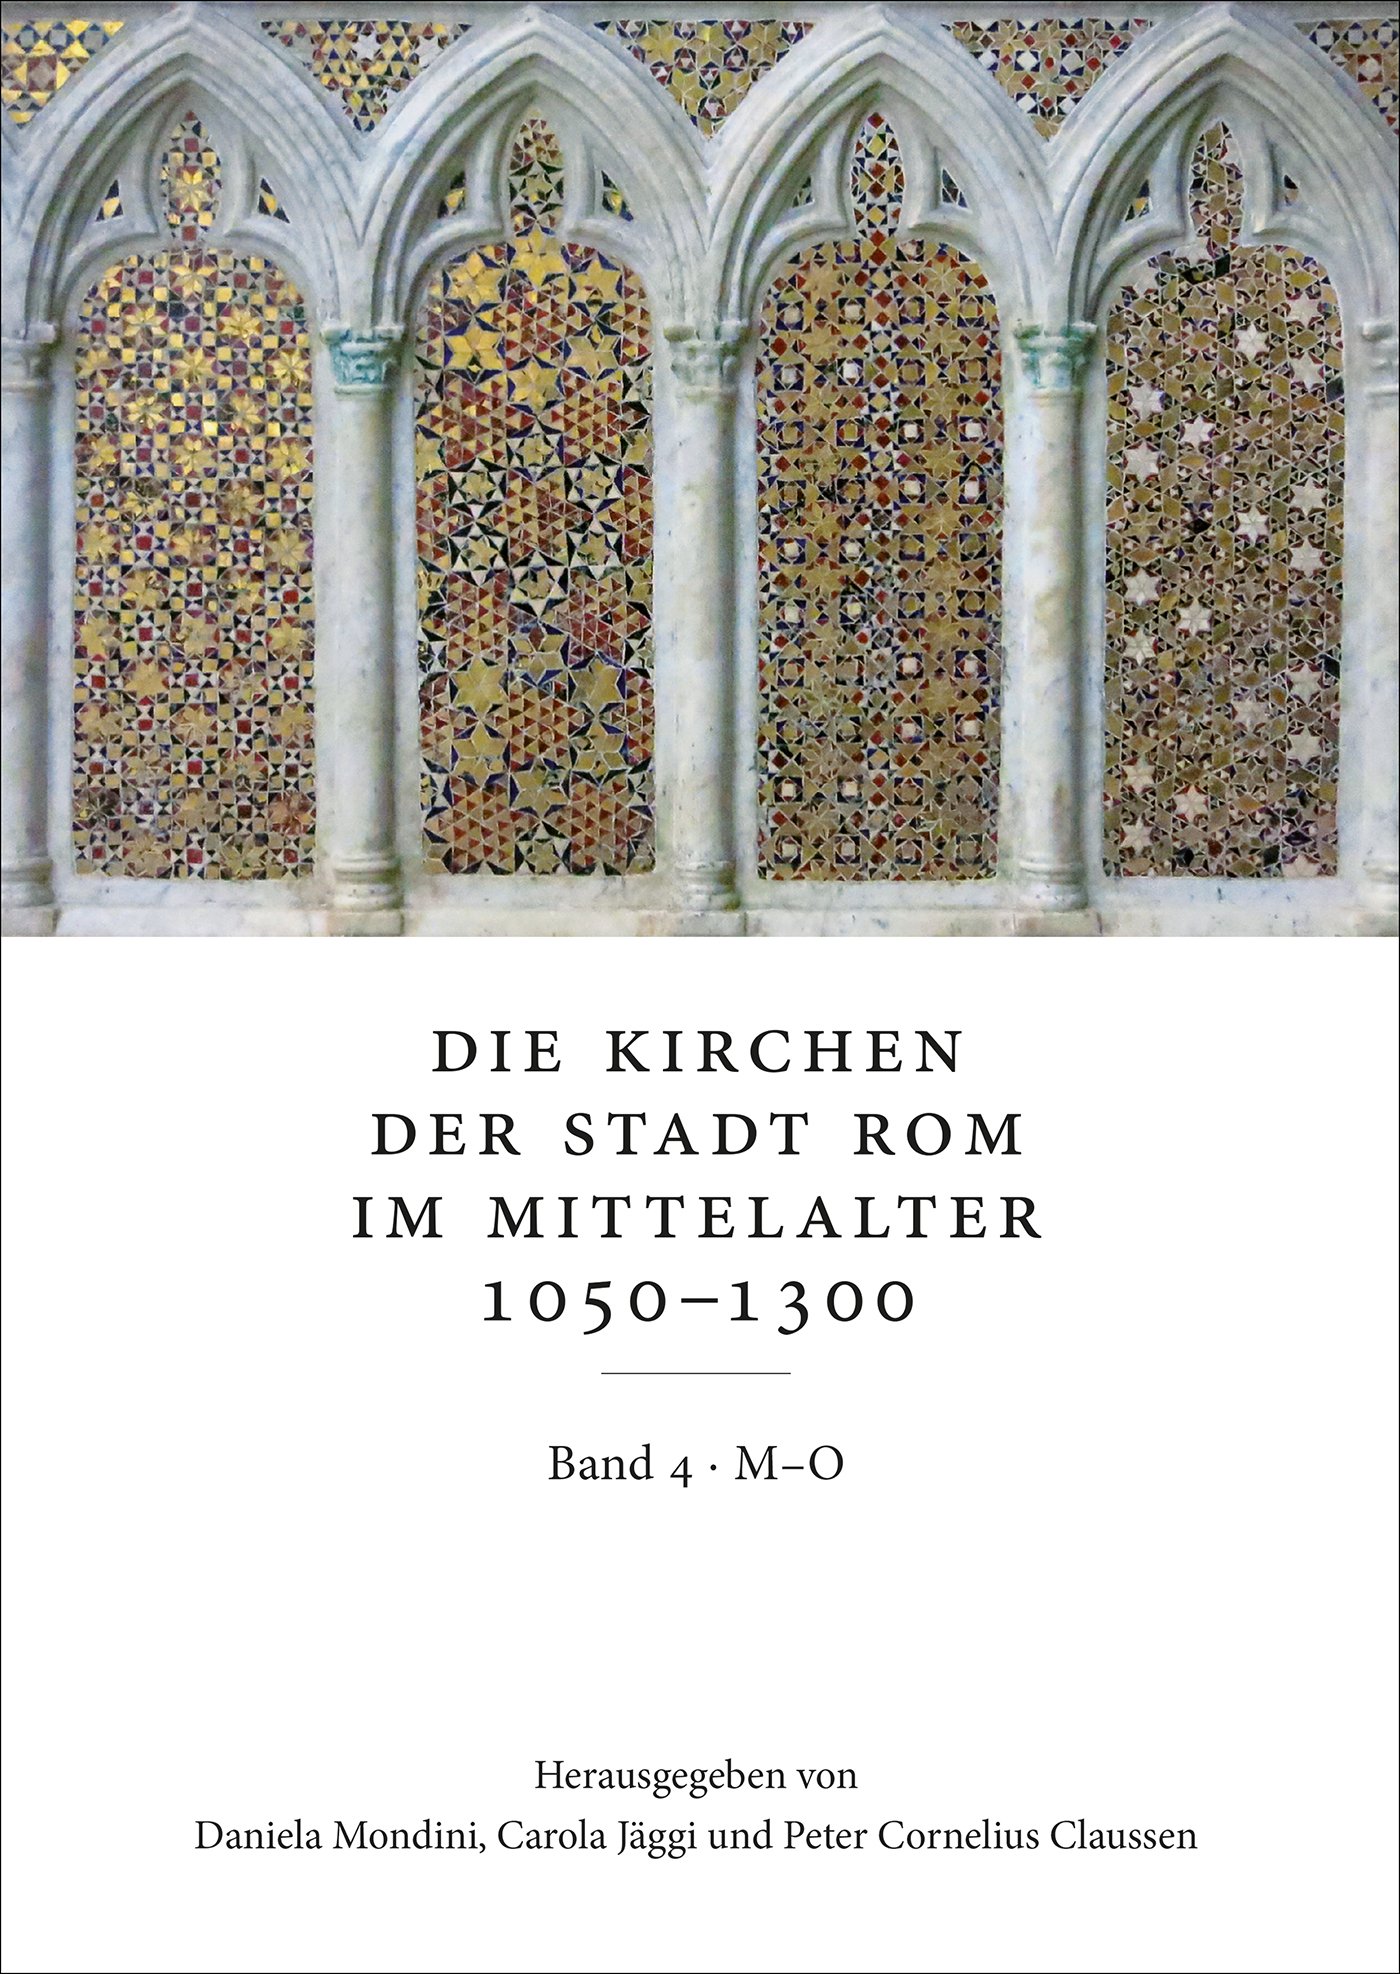 Die Kirchen der Stadt Rom im Mittelalter 1050–1300, M–O: SS. Marcellino e Pietro bis S. Omobono. Bd. 4